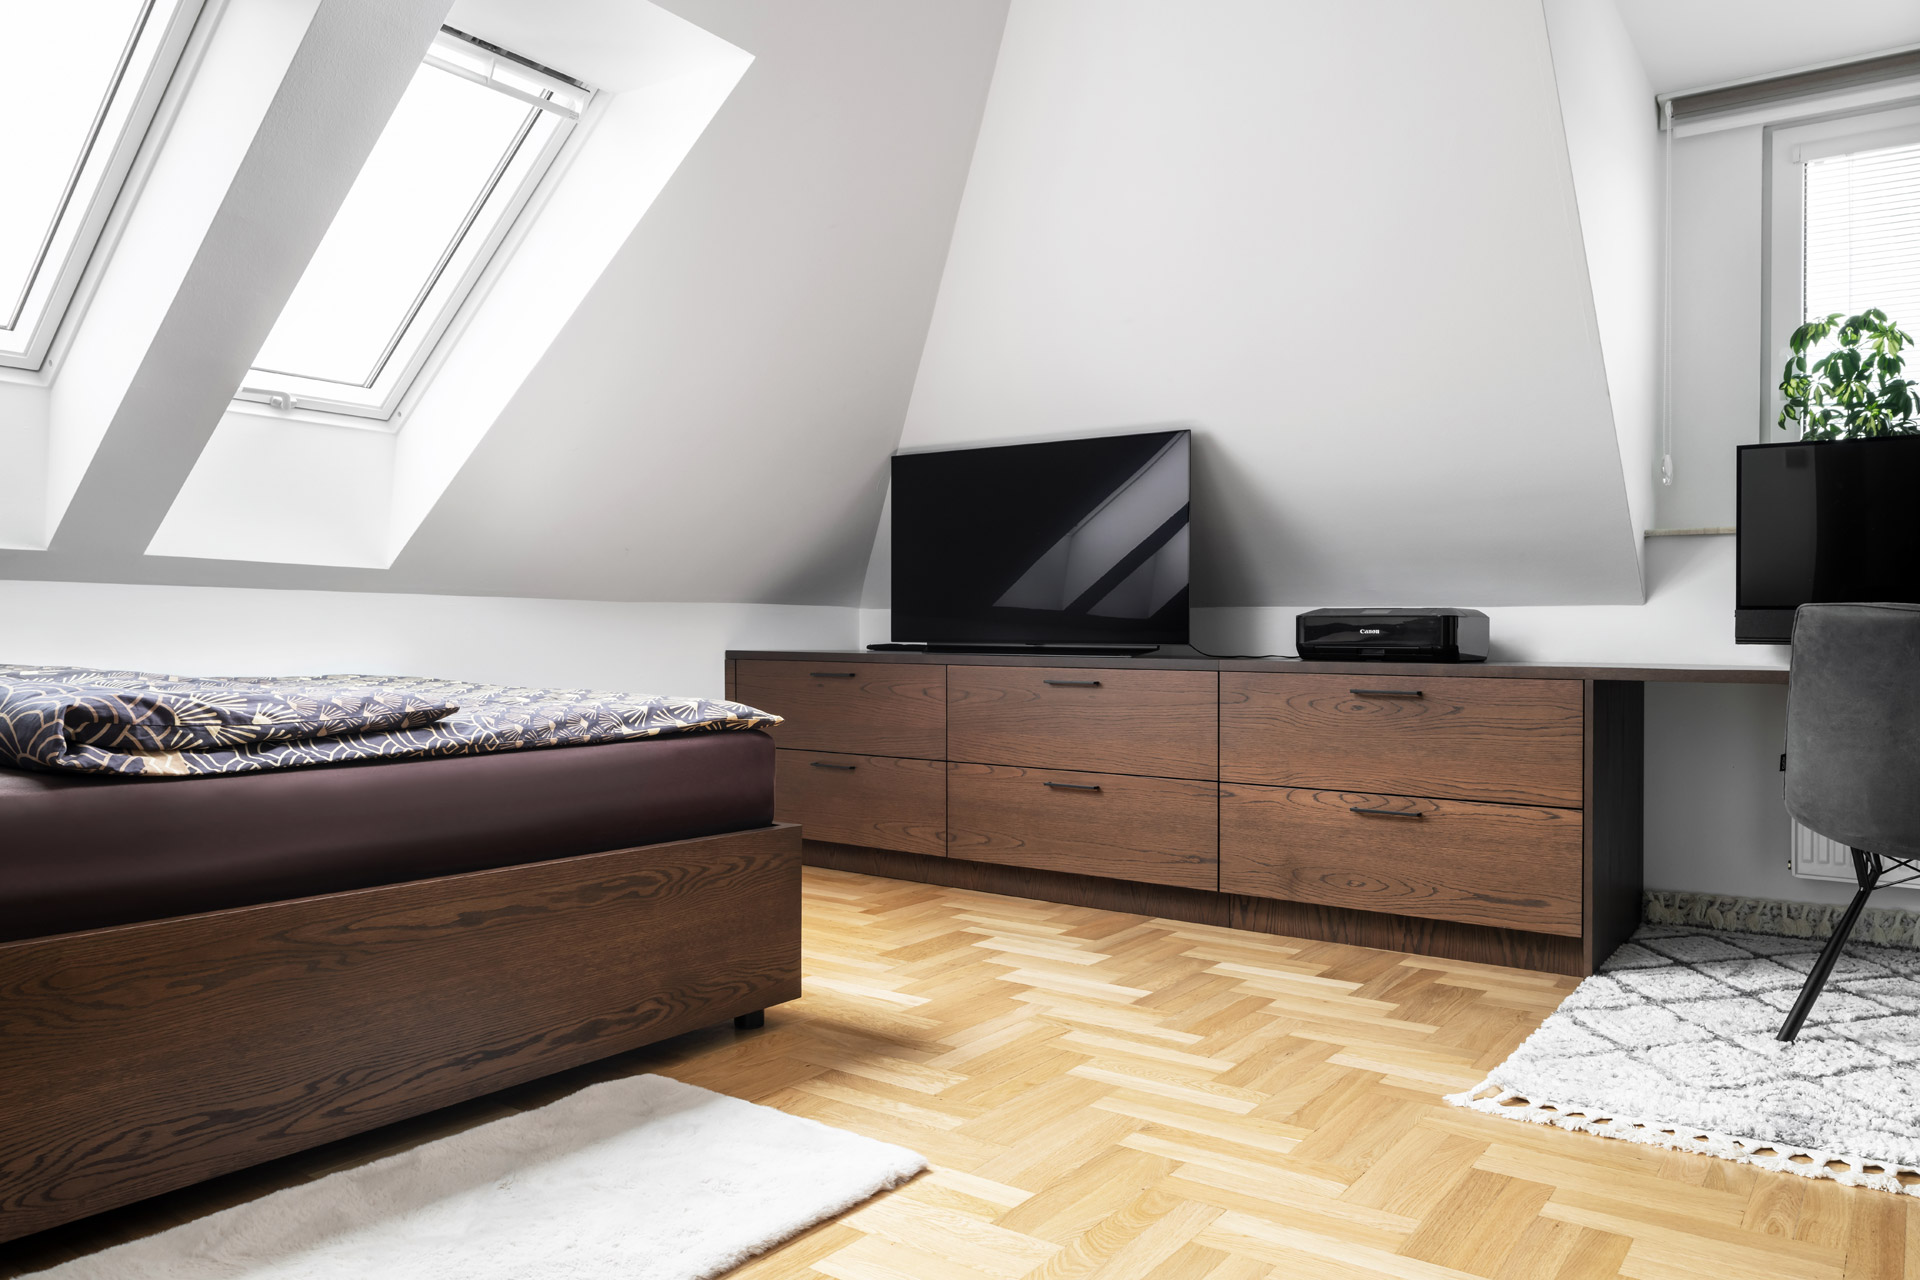 Hanák Furniture Realization of bedroom